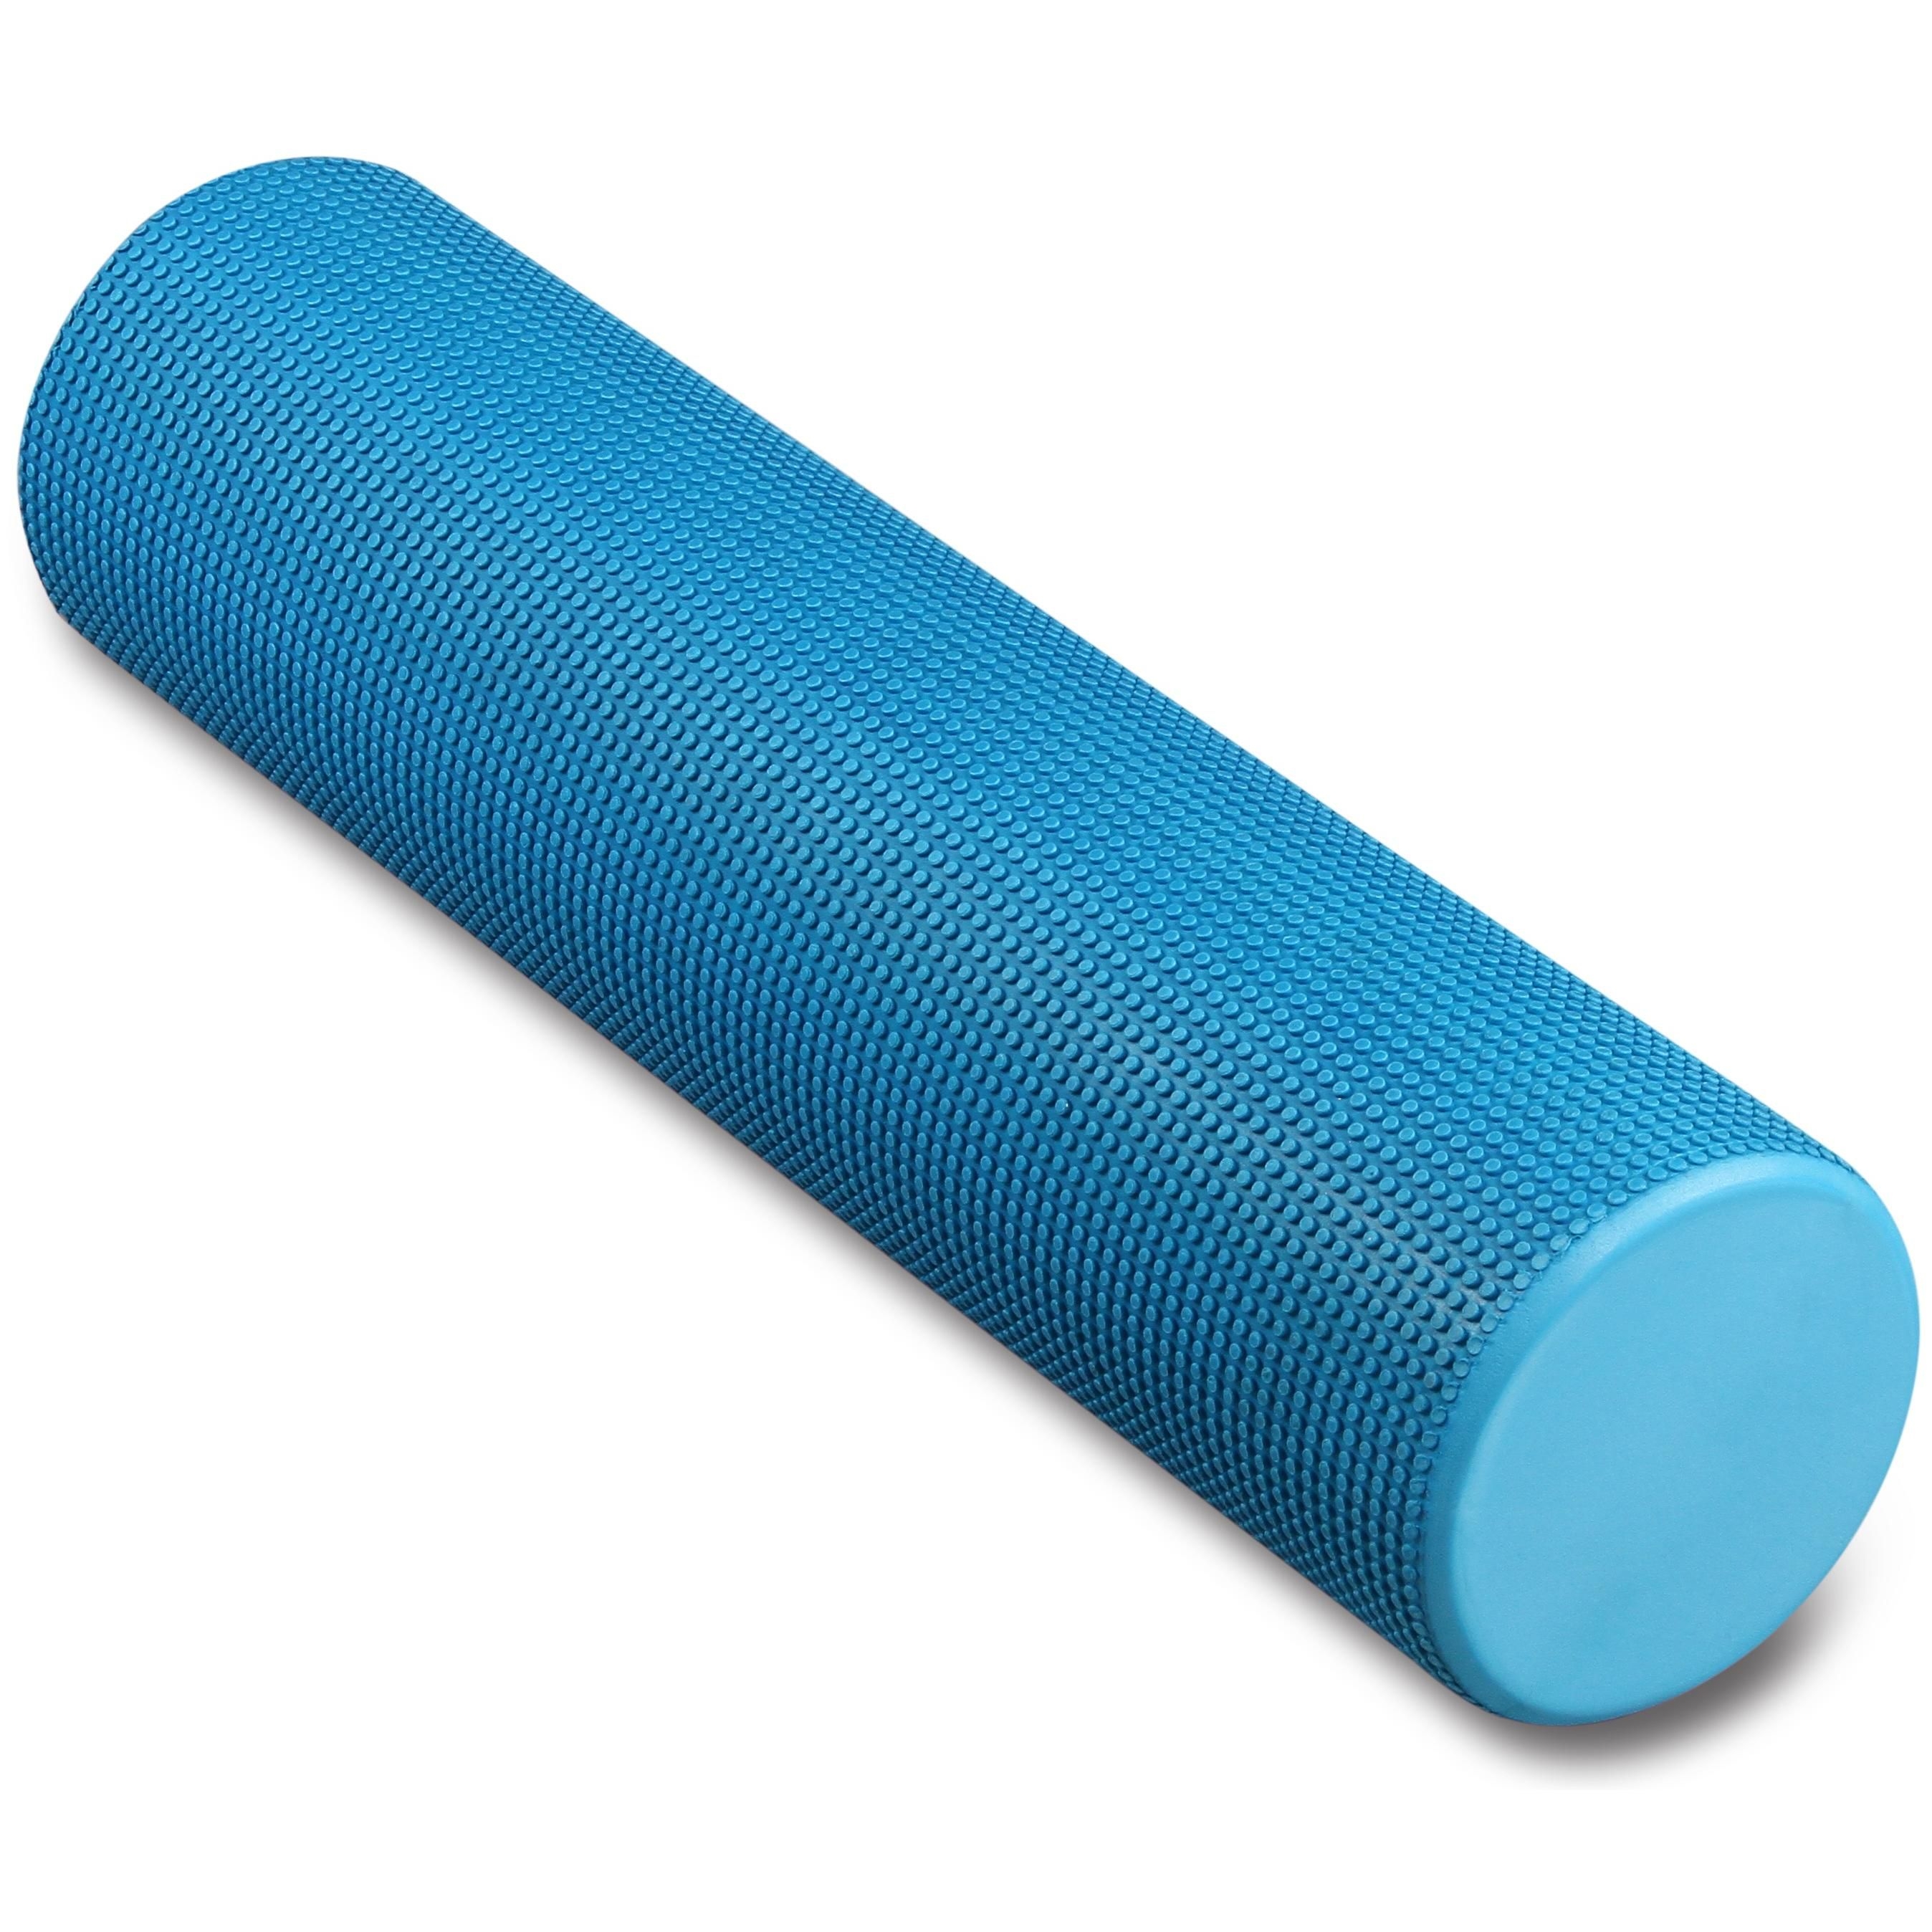 Rodillo de espuma redondo para masajes musculares y yoga INDIGO 60*15 Azul Claro